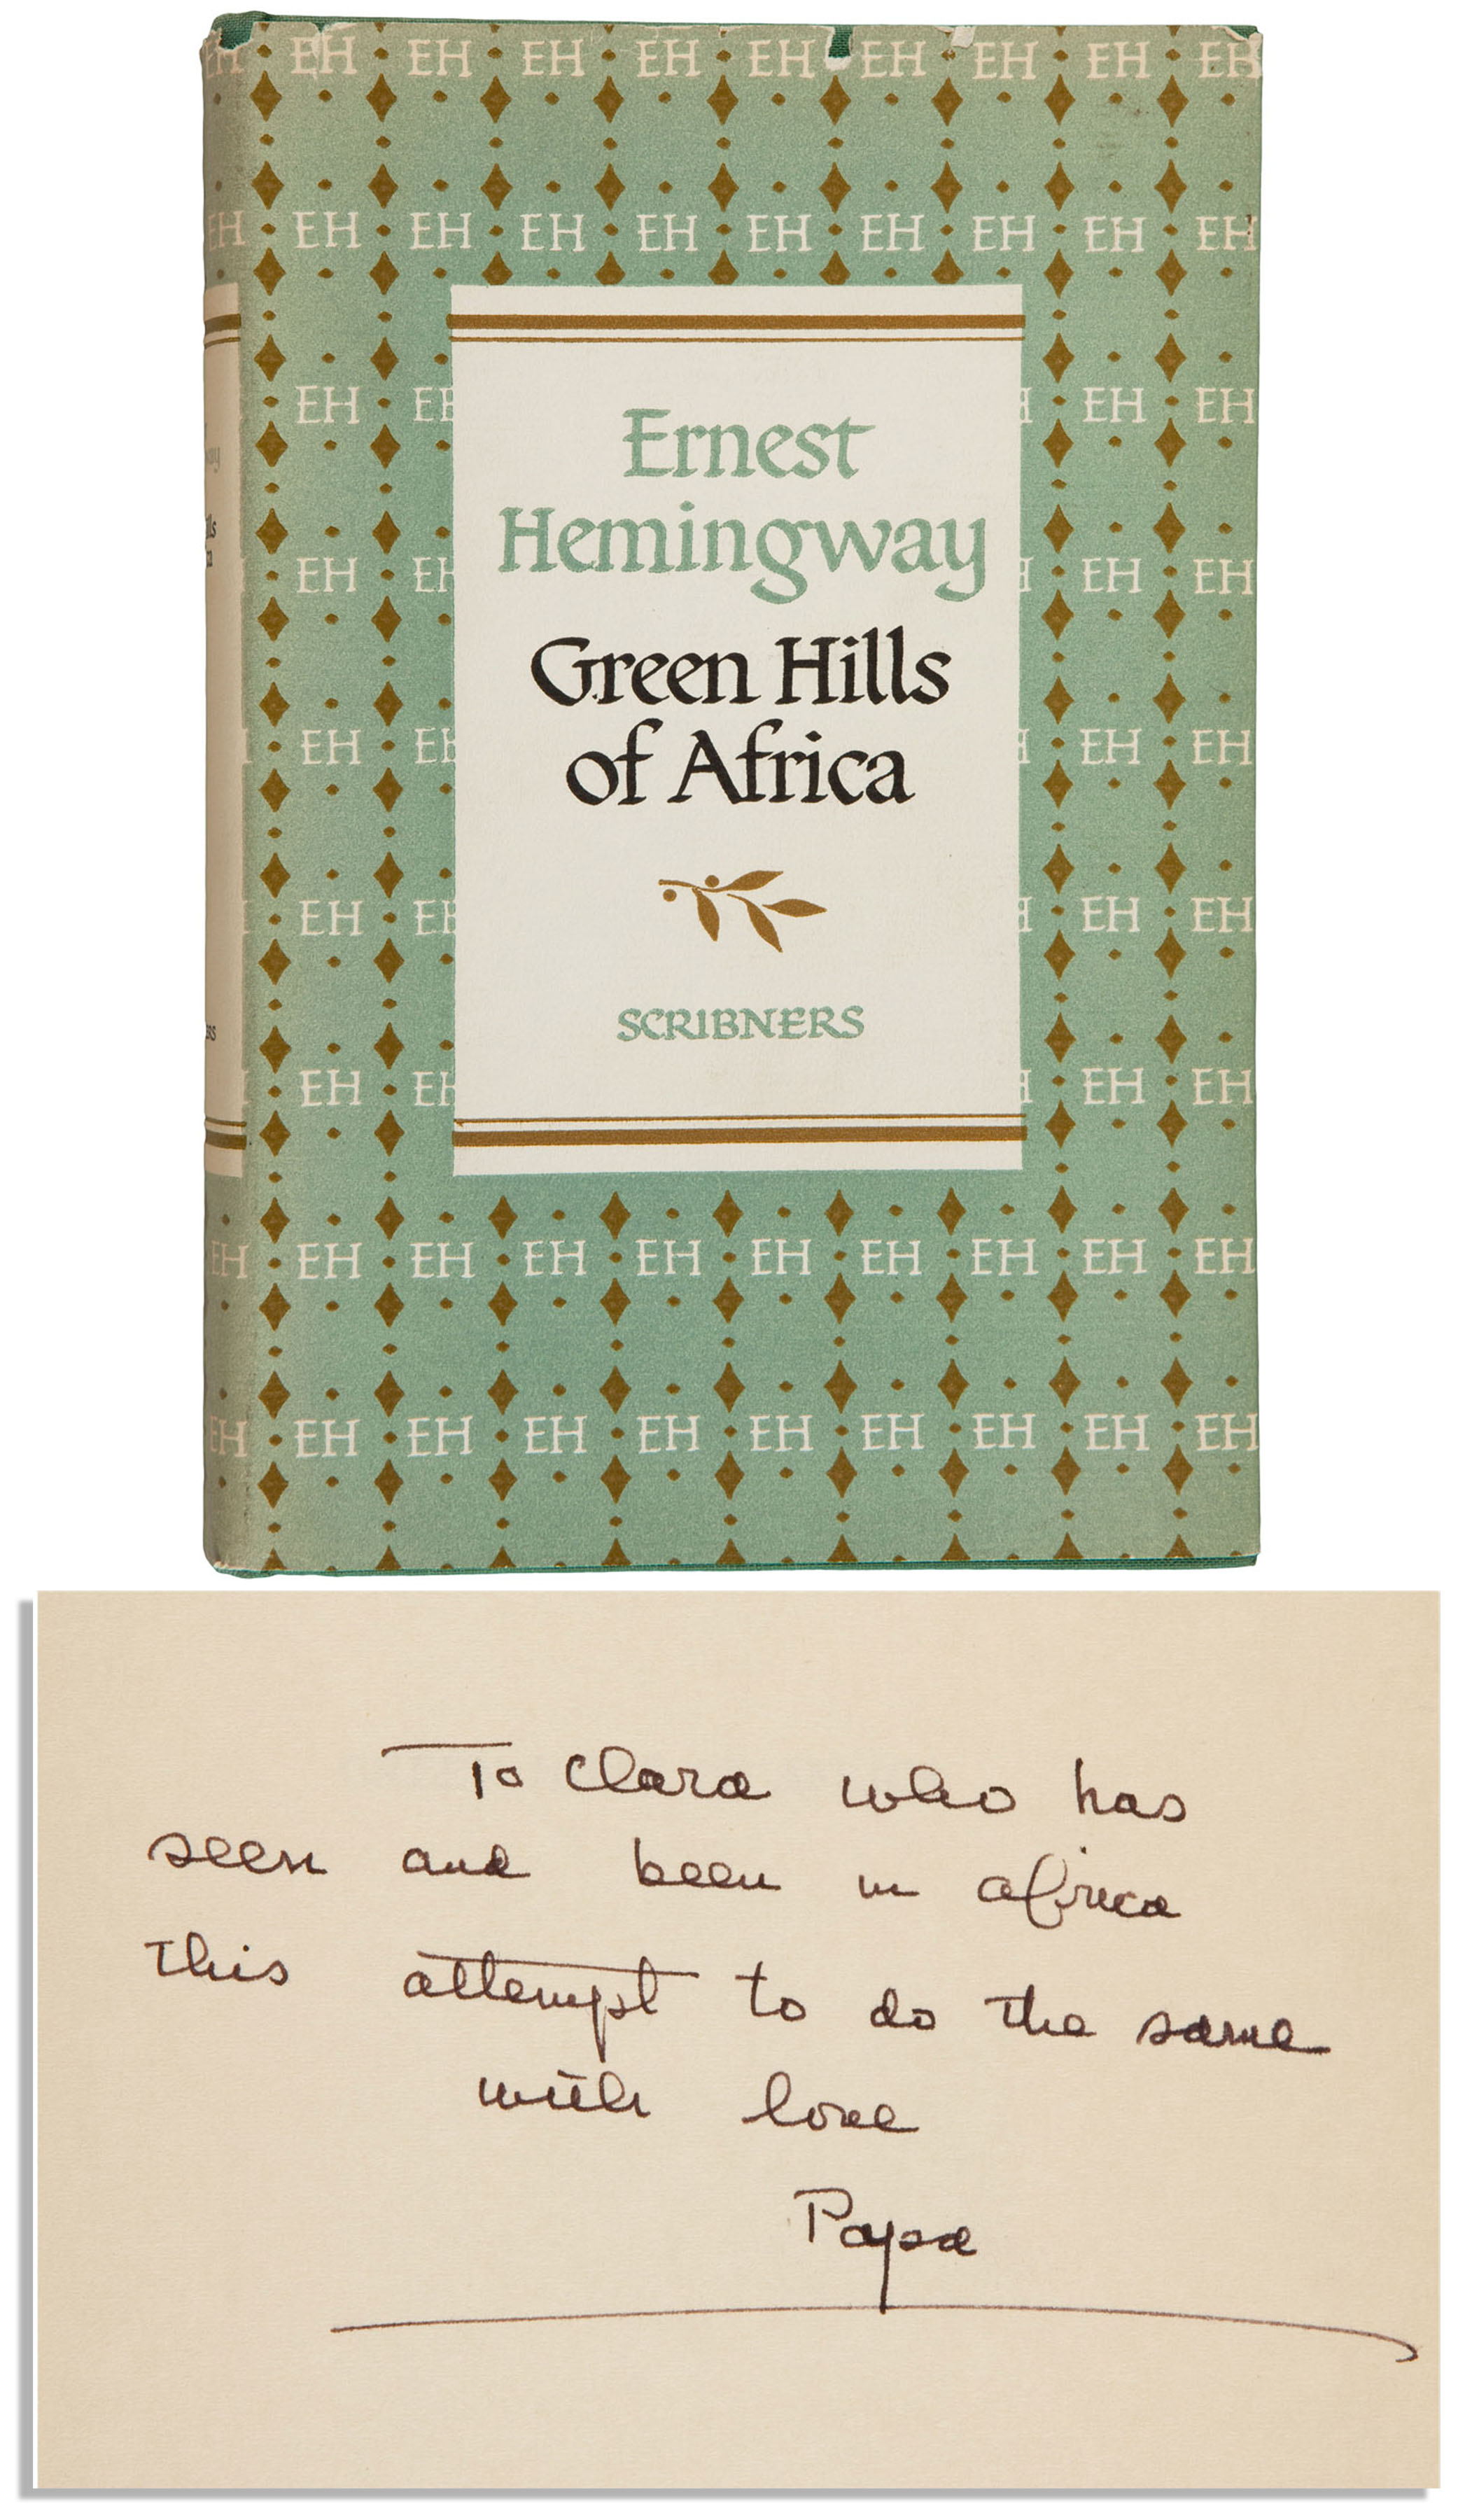 Ernest Hemingway Green Hills of Africa signed